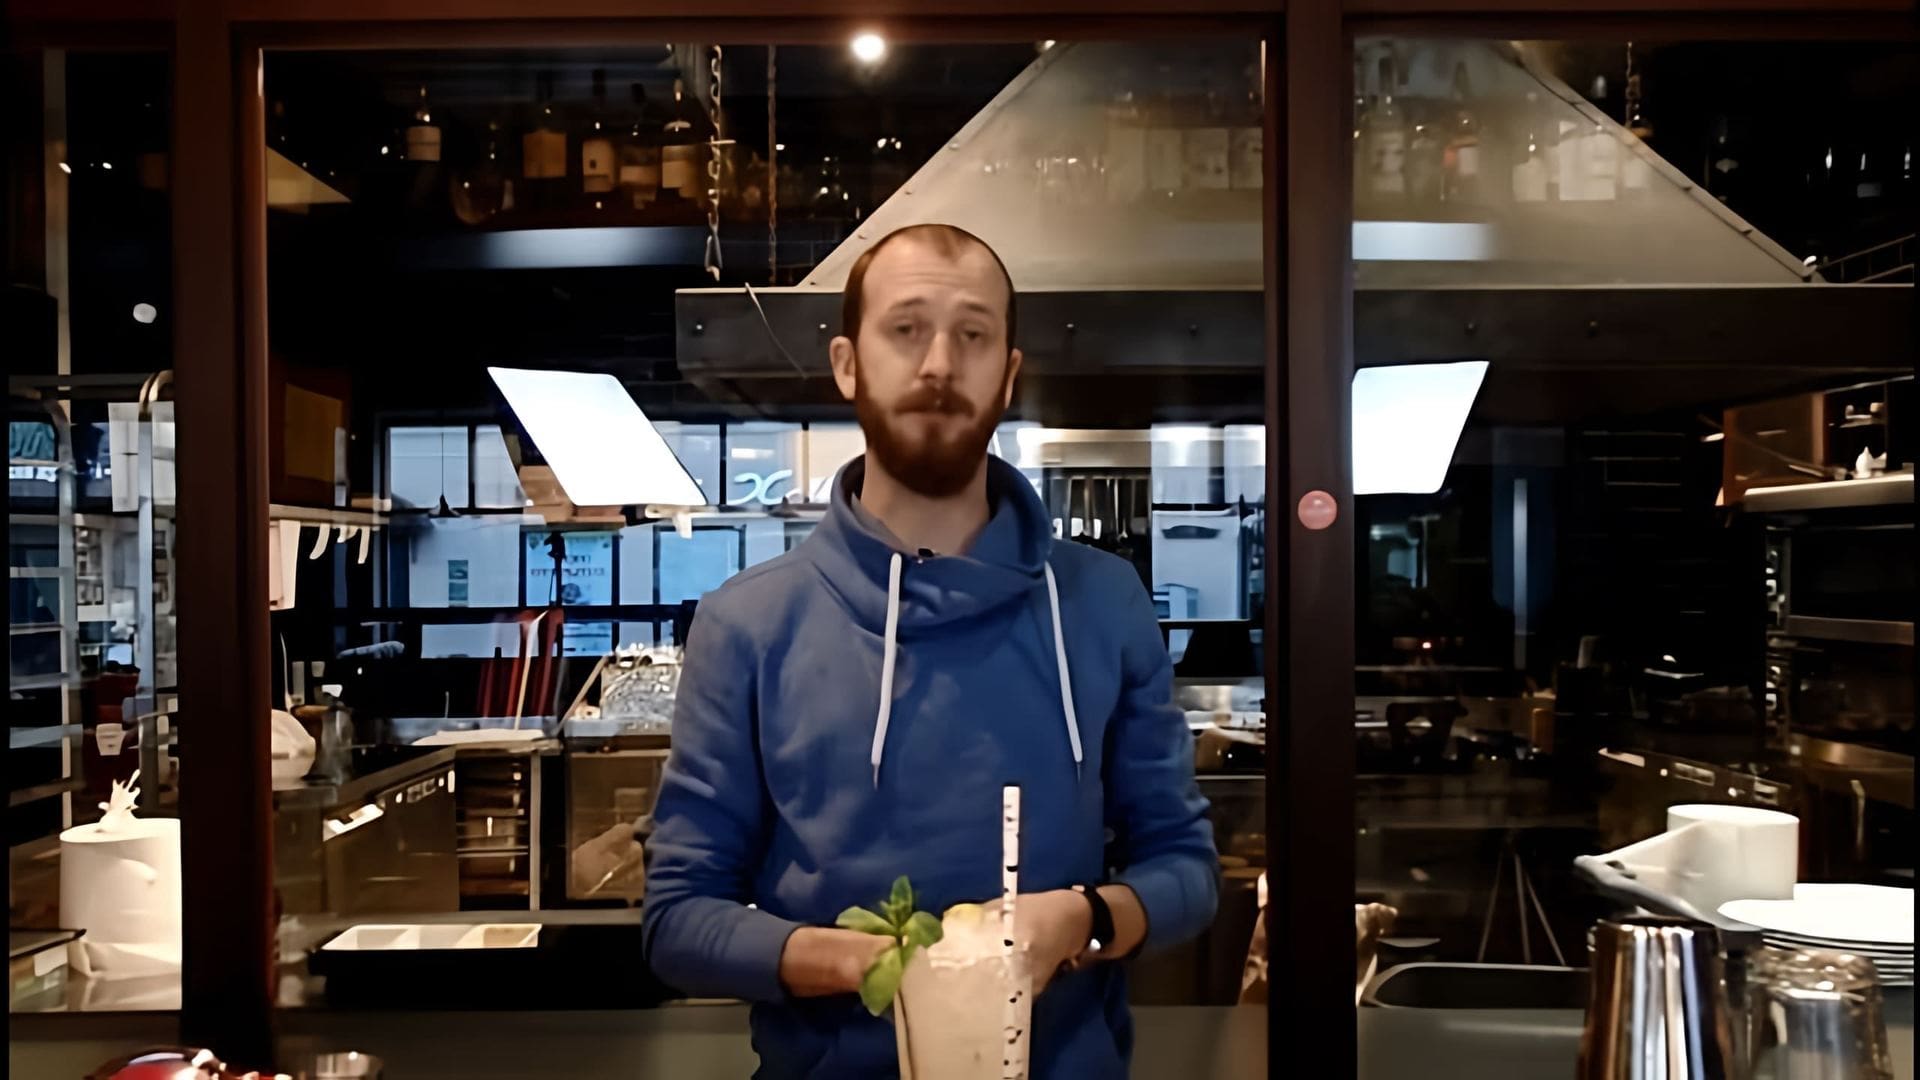 Мохито - алкогольный рецепт коктейля от Василия Захарова

В этом видео-ролике Василий Захаров показывает, как приготовить мохито - популярный алкогольный коктейль